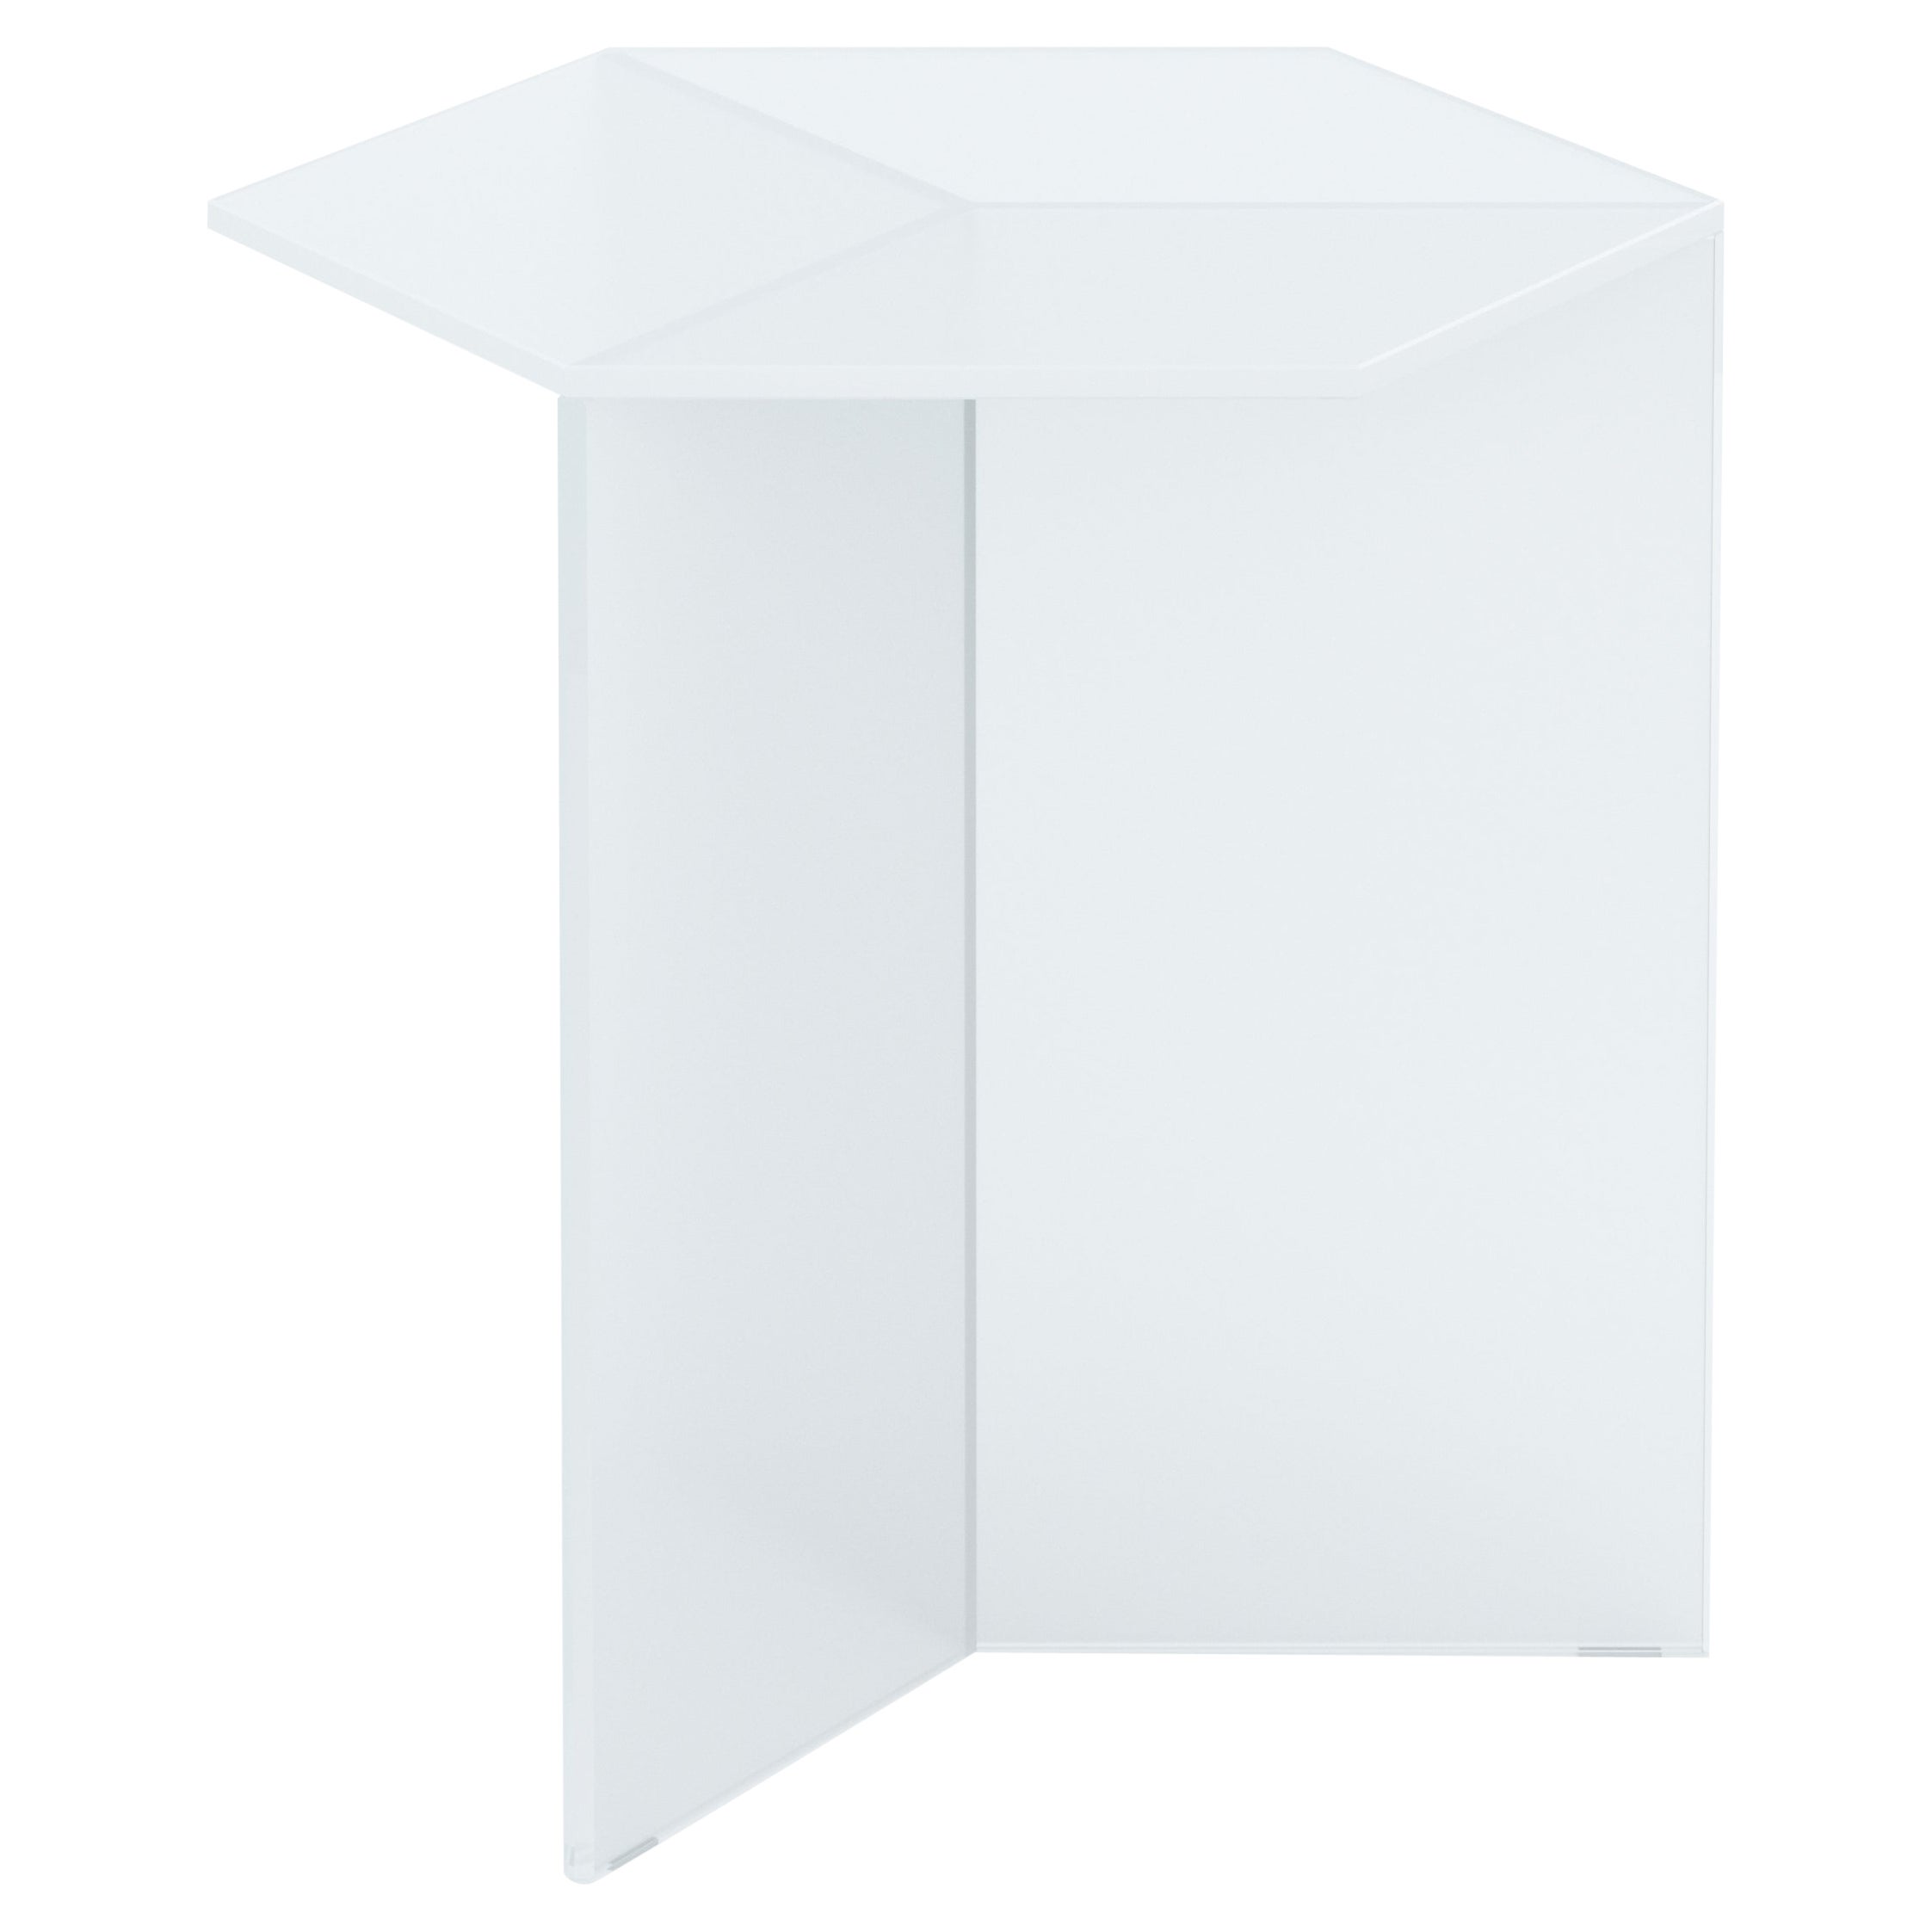 Isom Tall 45 cm Side Table Satin Glass White, Sebastian Scherer Neo/Craft For Sale